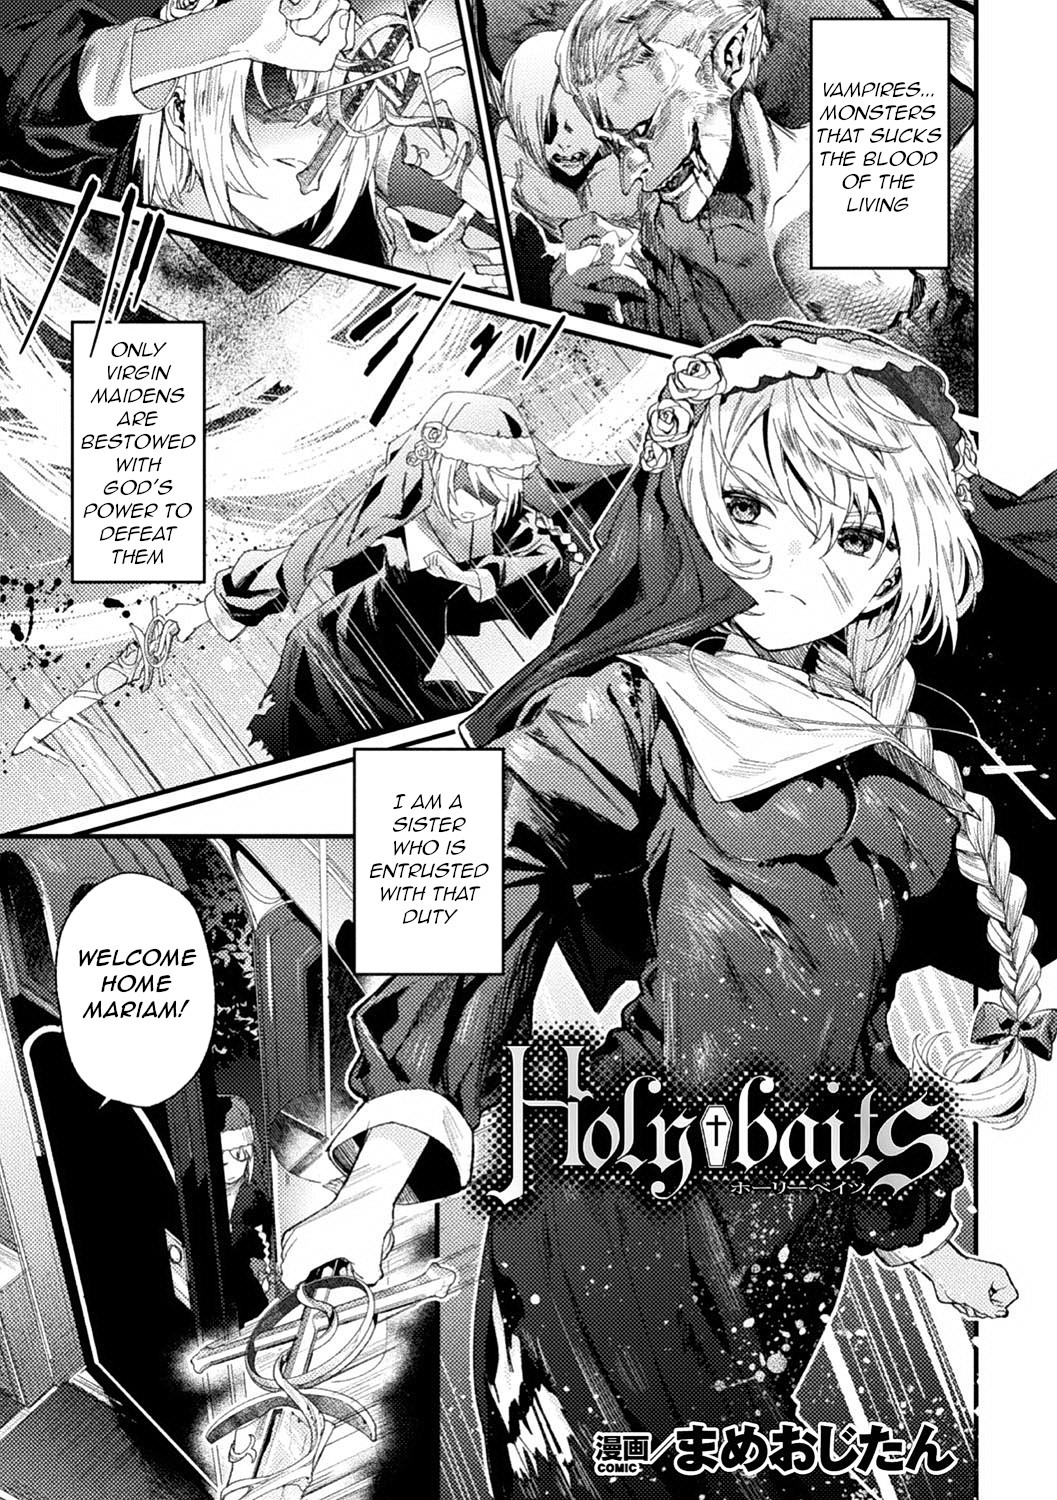 Hentai Manga Comic-Holy†baits-Read-1